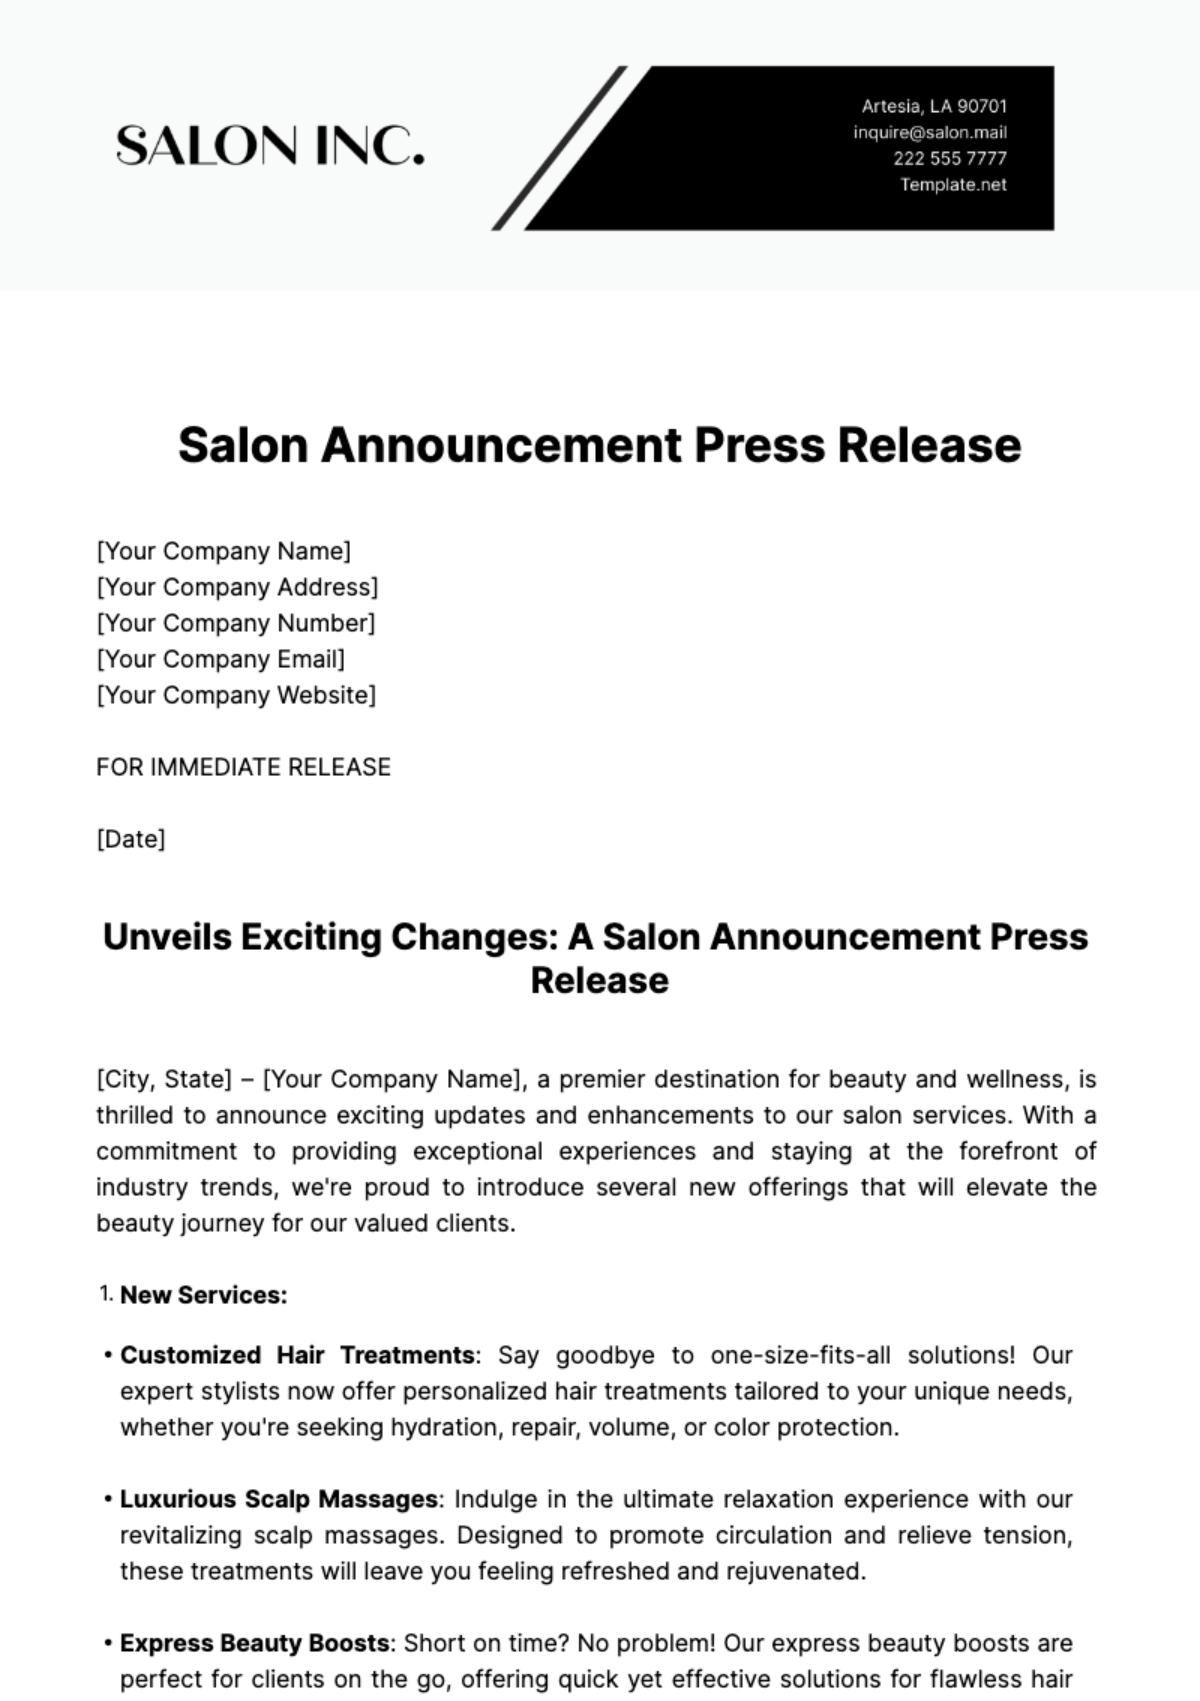 Salon Announcement Press Release Template